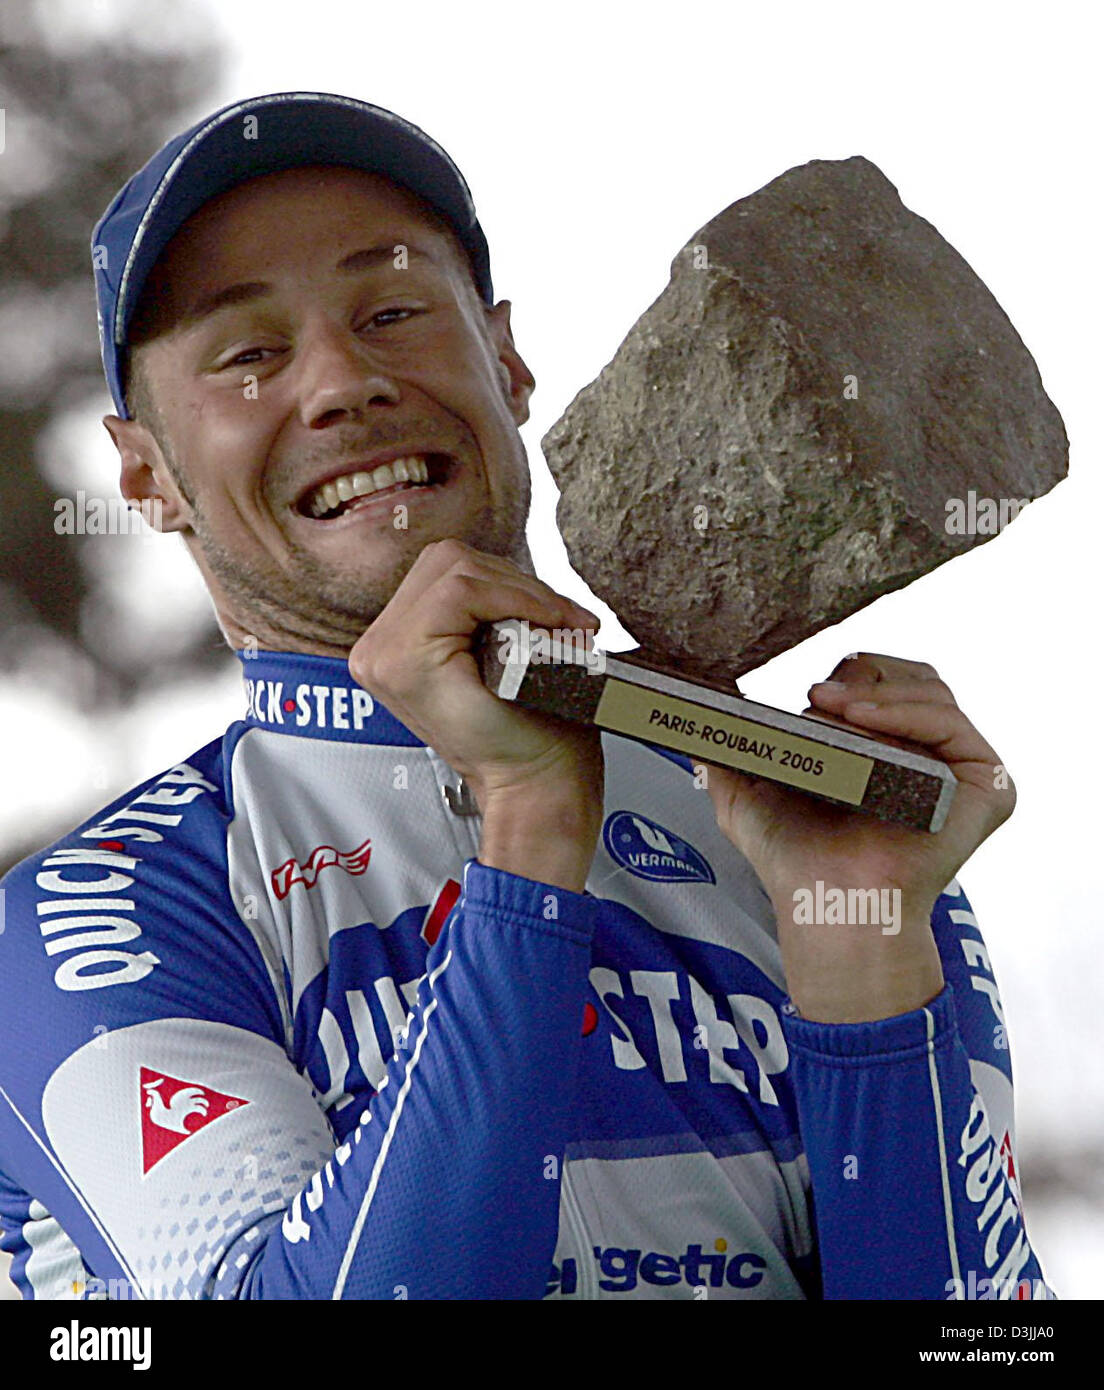 (Dpa) - belgischer Radrennfahrer Tom Boonen von Quick Step-Team hält seine Trophäe nach dem Gewinn der 103. Ausgabe das Radrennen Paris-Roubaix in Roubaix, Frankreich, 10. April 2005. Stockfoto